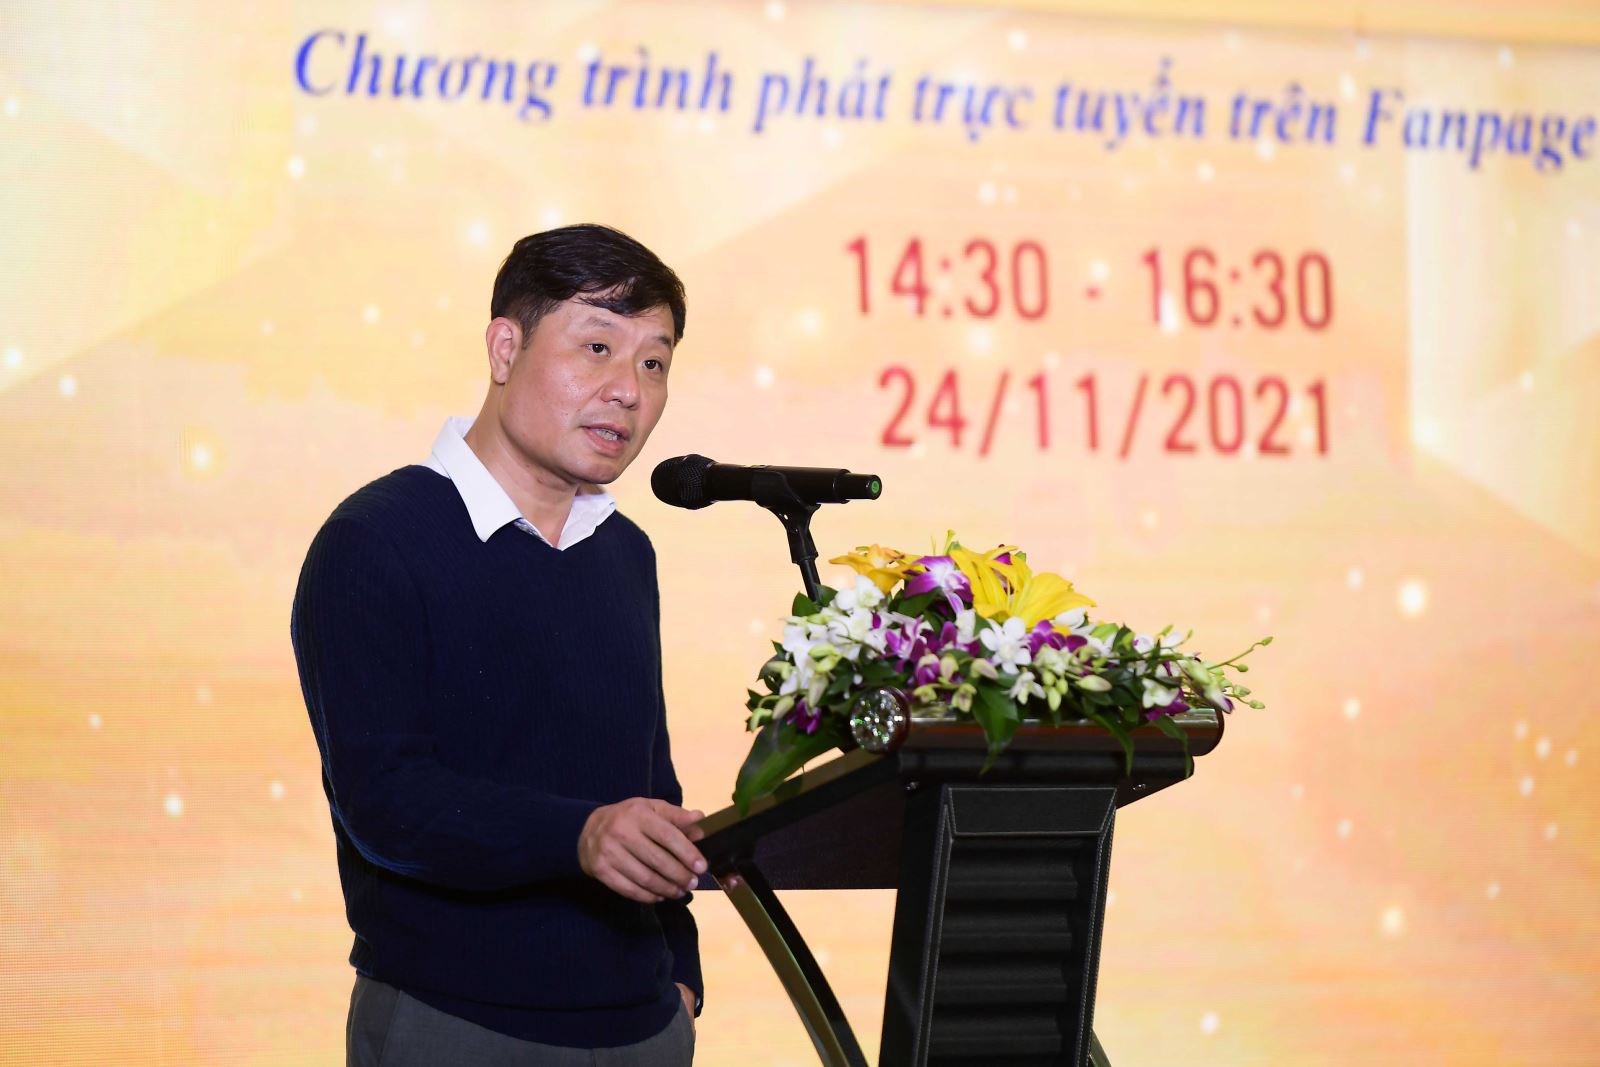 GS. Vũ Hà Văn (Giám đốc Khoa học VinIF và VinBigData) khẳng định: VinIF luôn theo đuổi mục tiêu kết nối trí thức trẻ, kỳ vọng là nguồn tinh hoa kiến tạo sự phát triển toàn diện của Việt Nam